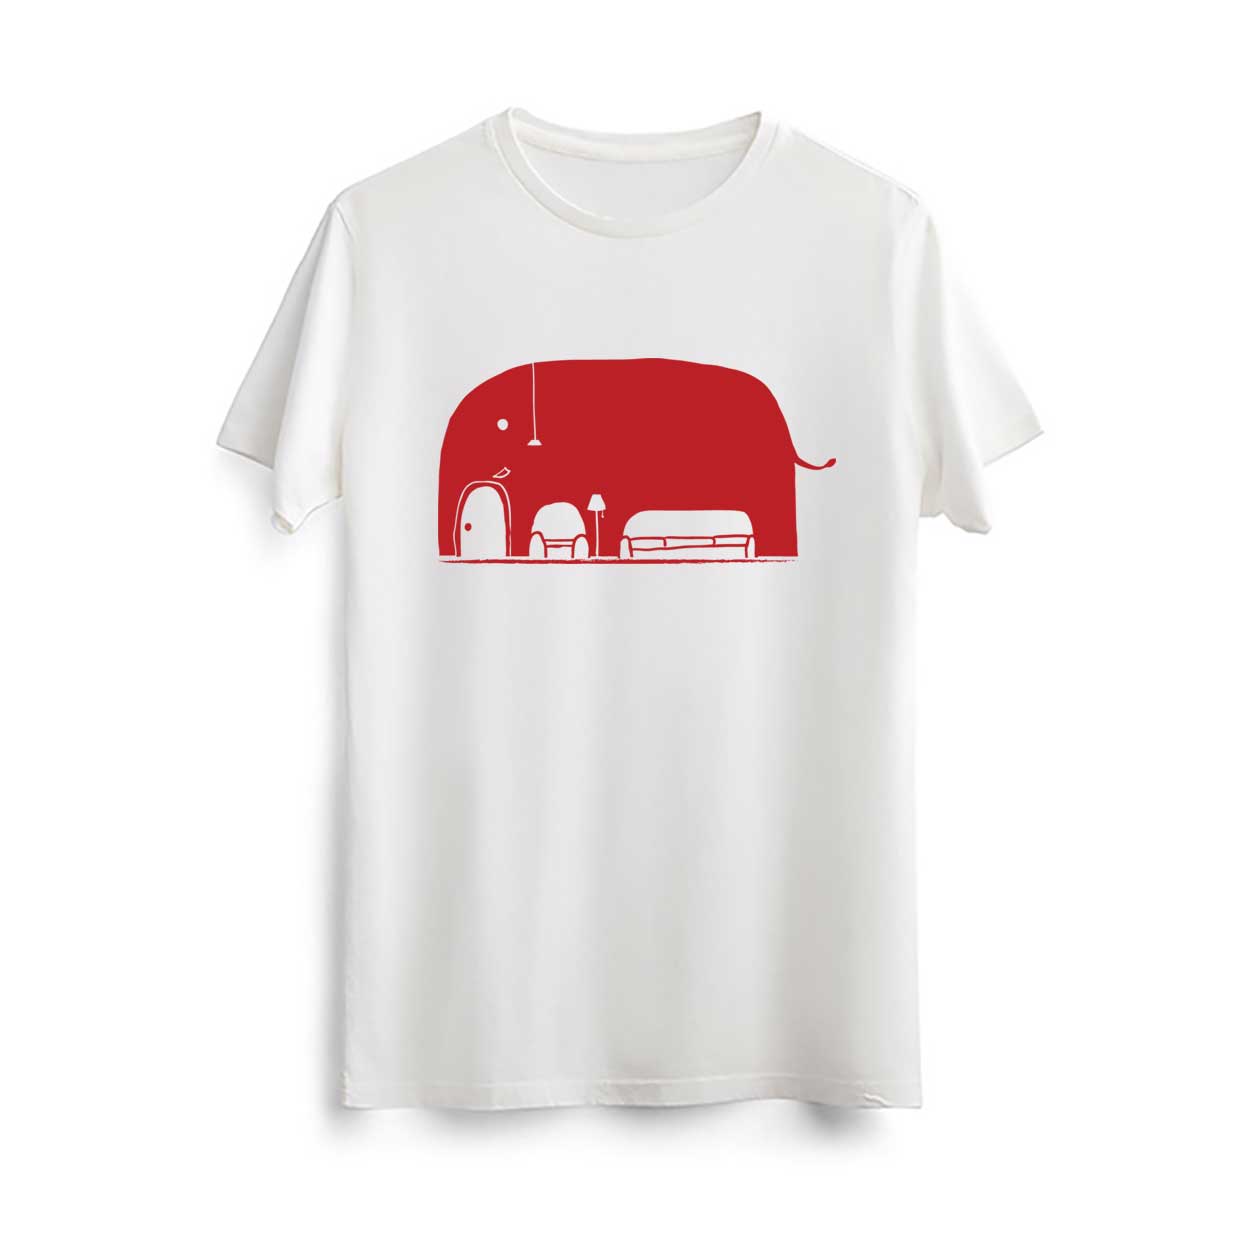 تیشرت سفید چطور میشه یک فیل رو توی خونه جا داد